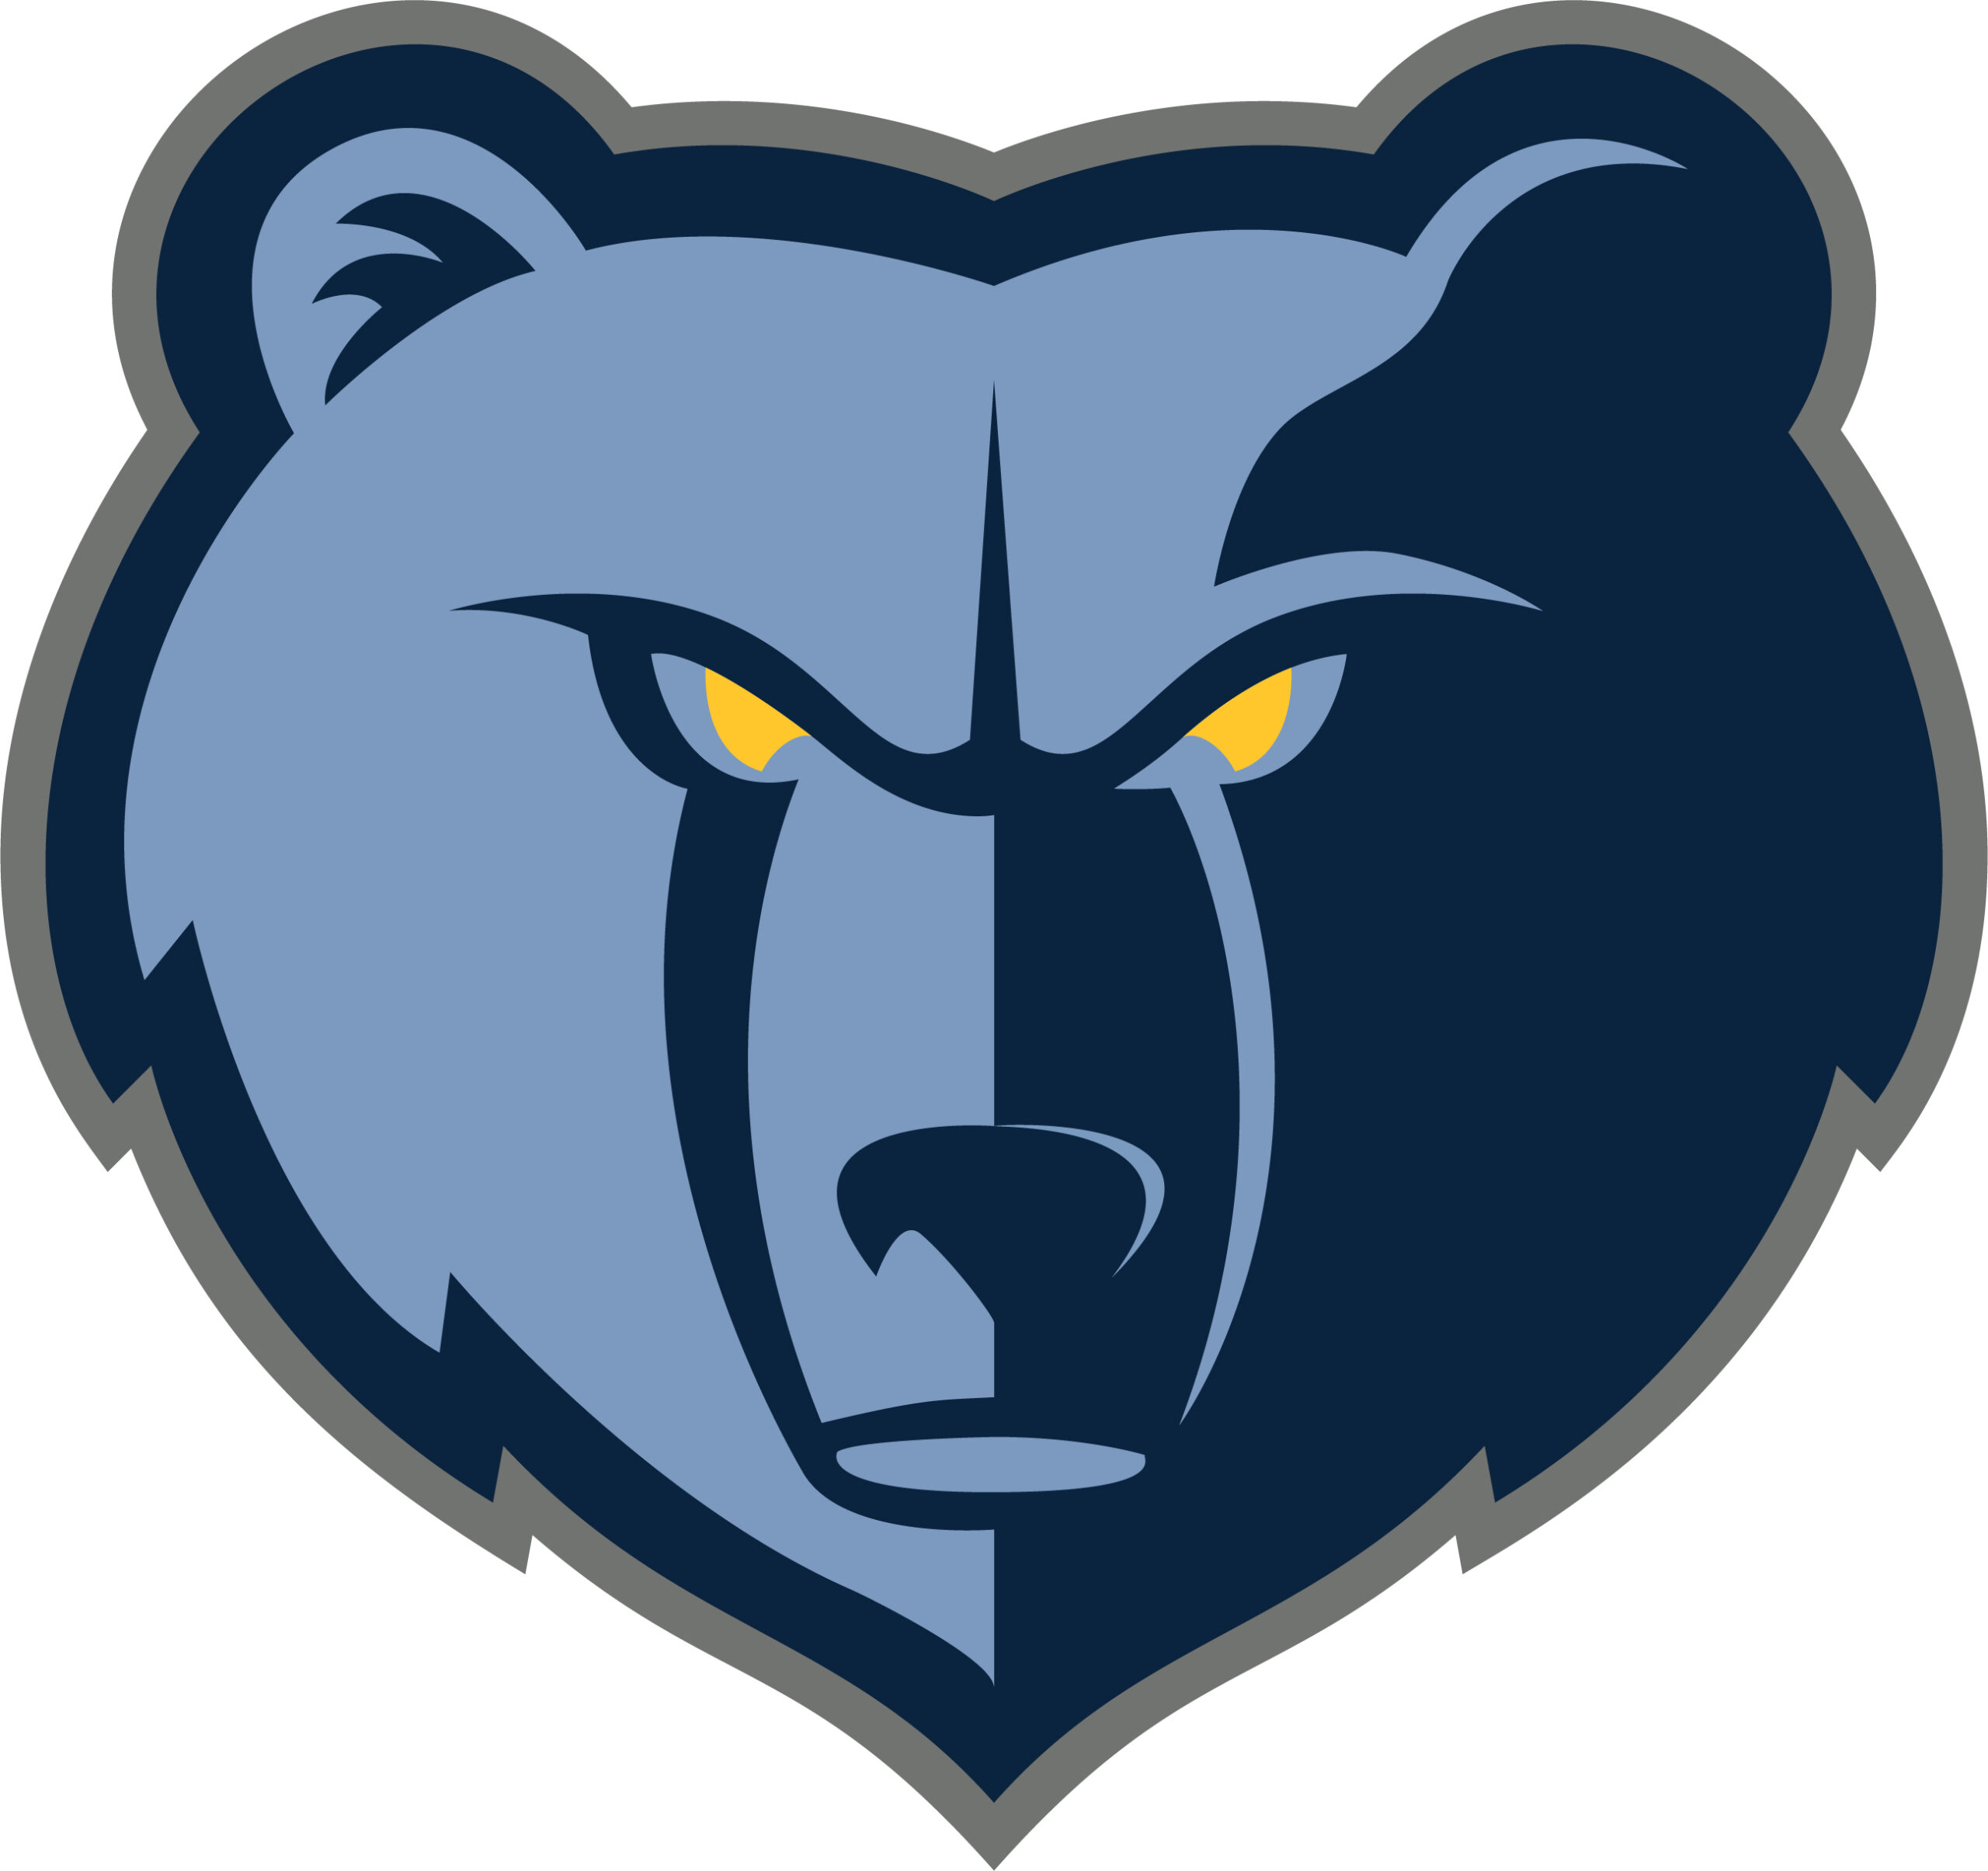 The Memphis Grizzlies logo.